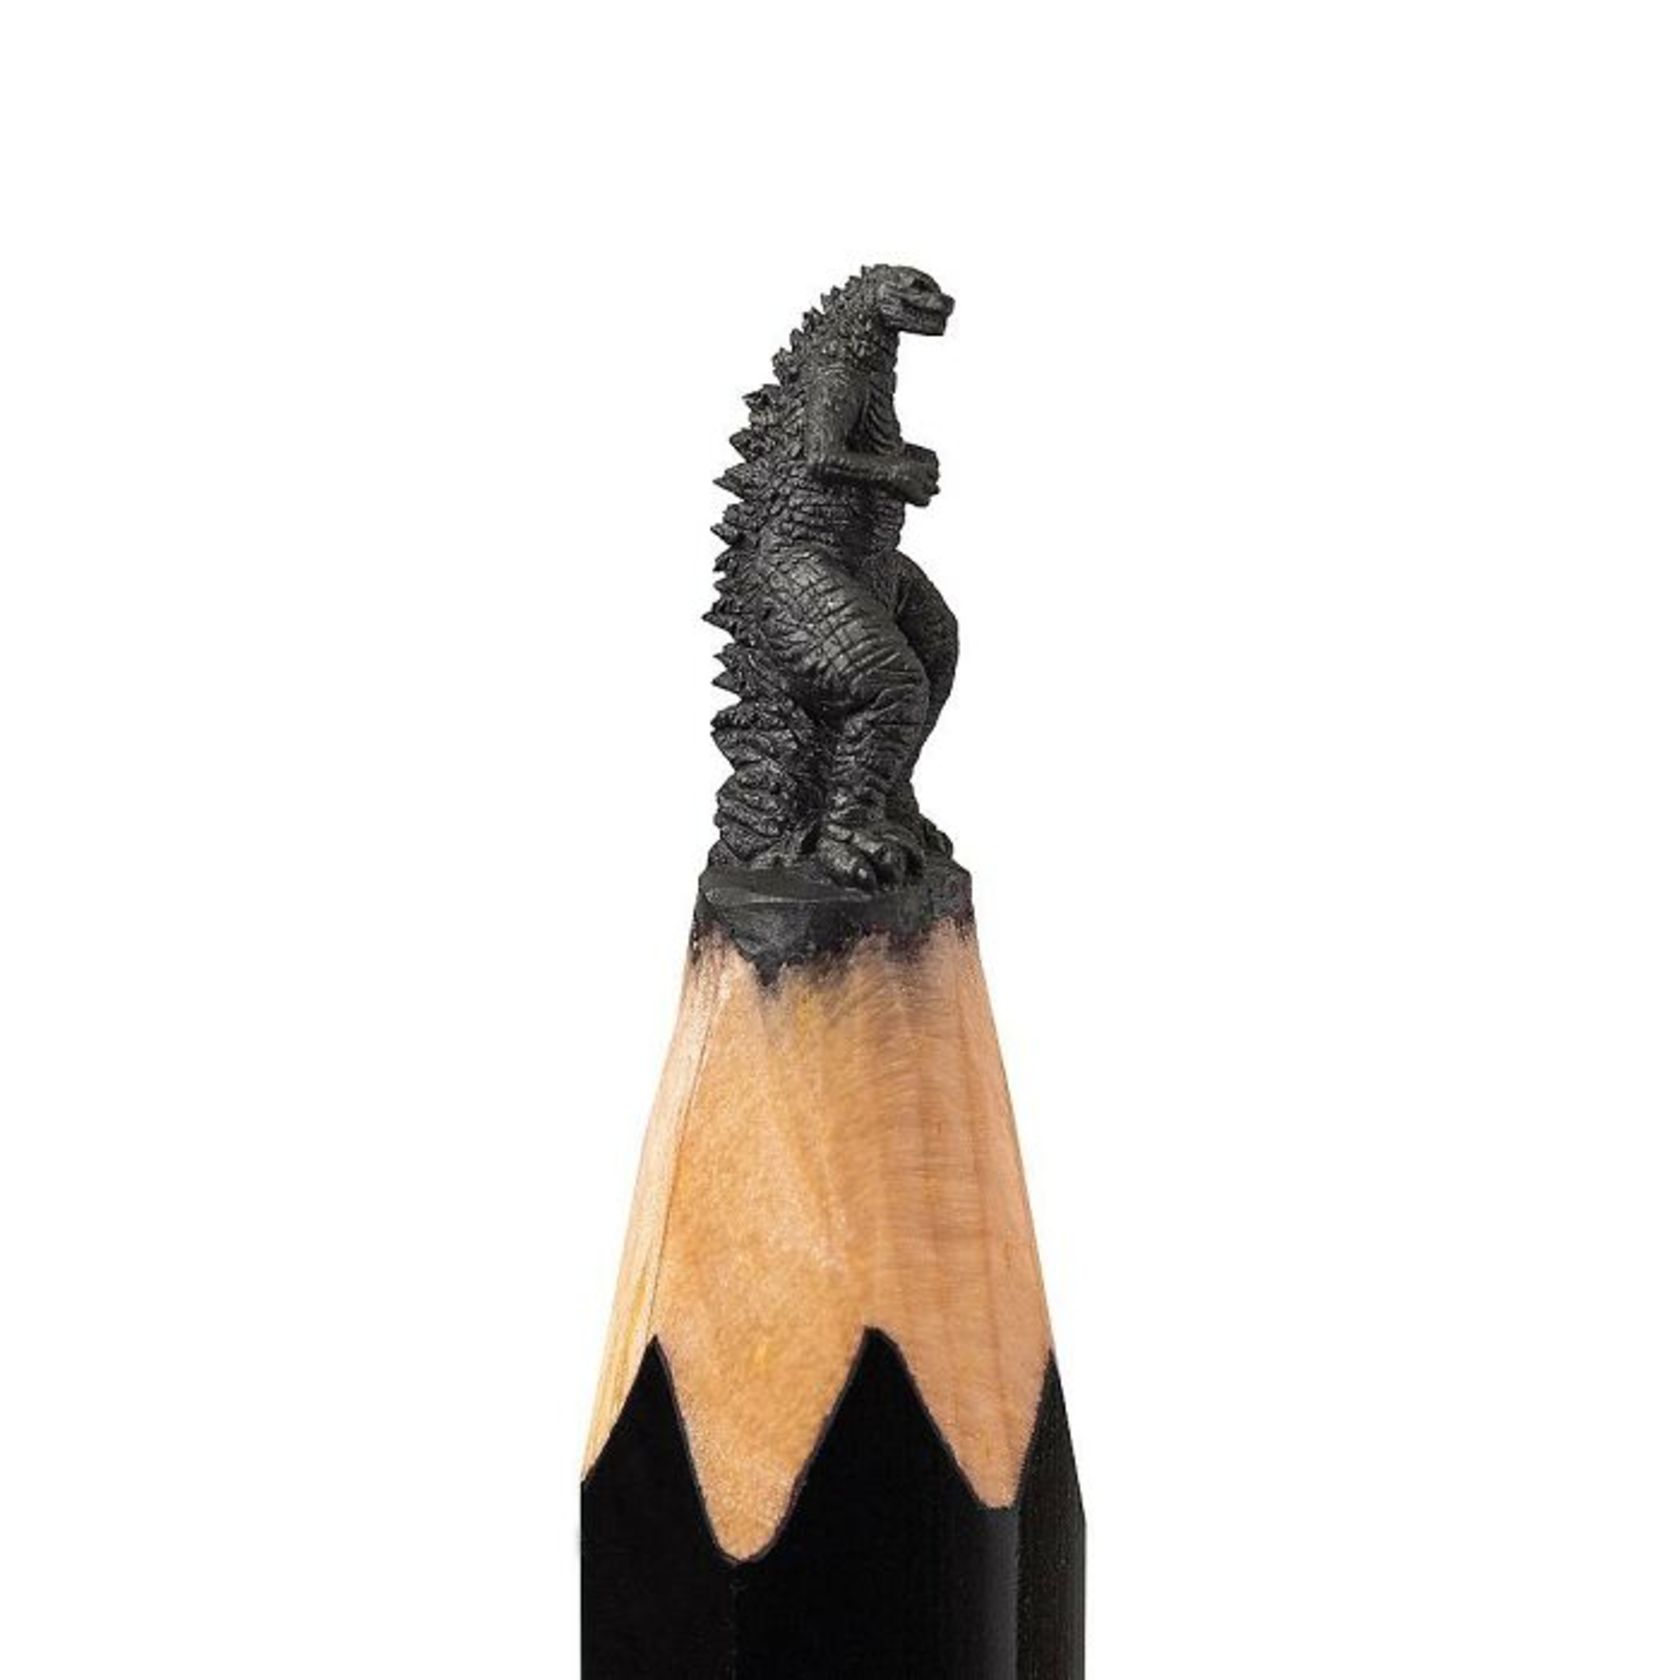 tip-of-pencil-miniature-sculptures-12-661ee7a5a55162c757fc594d